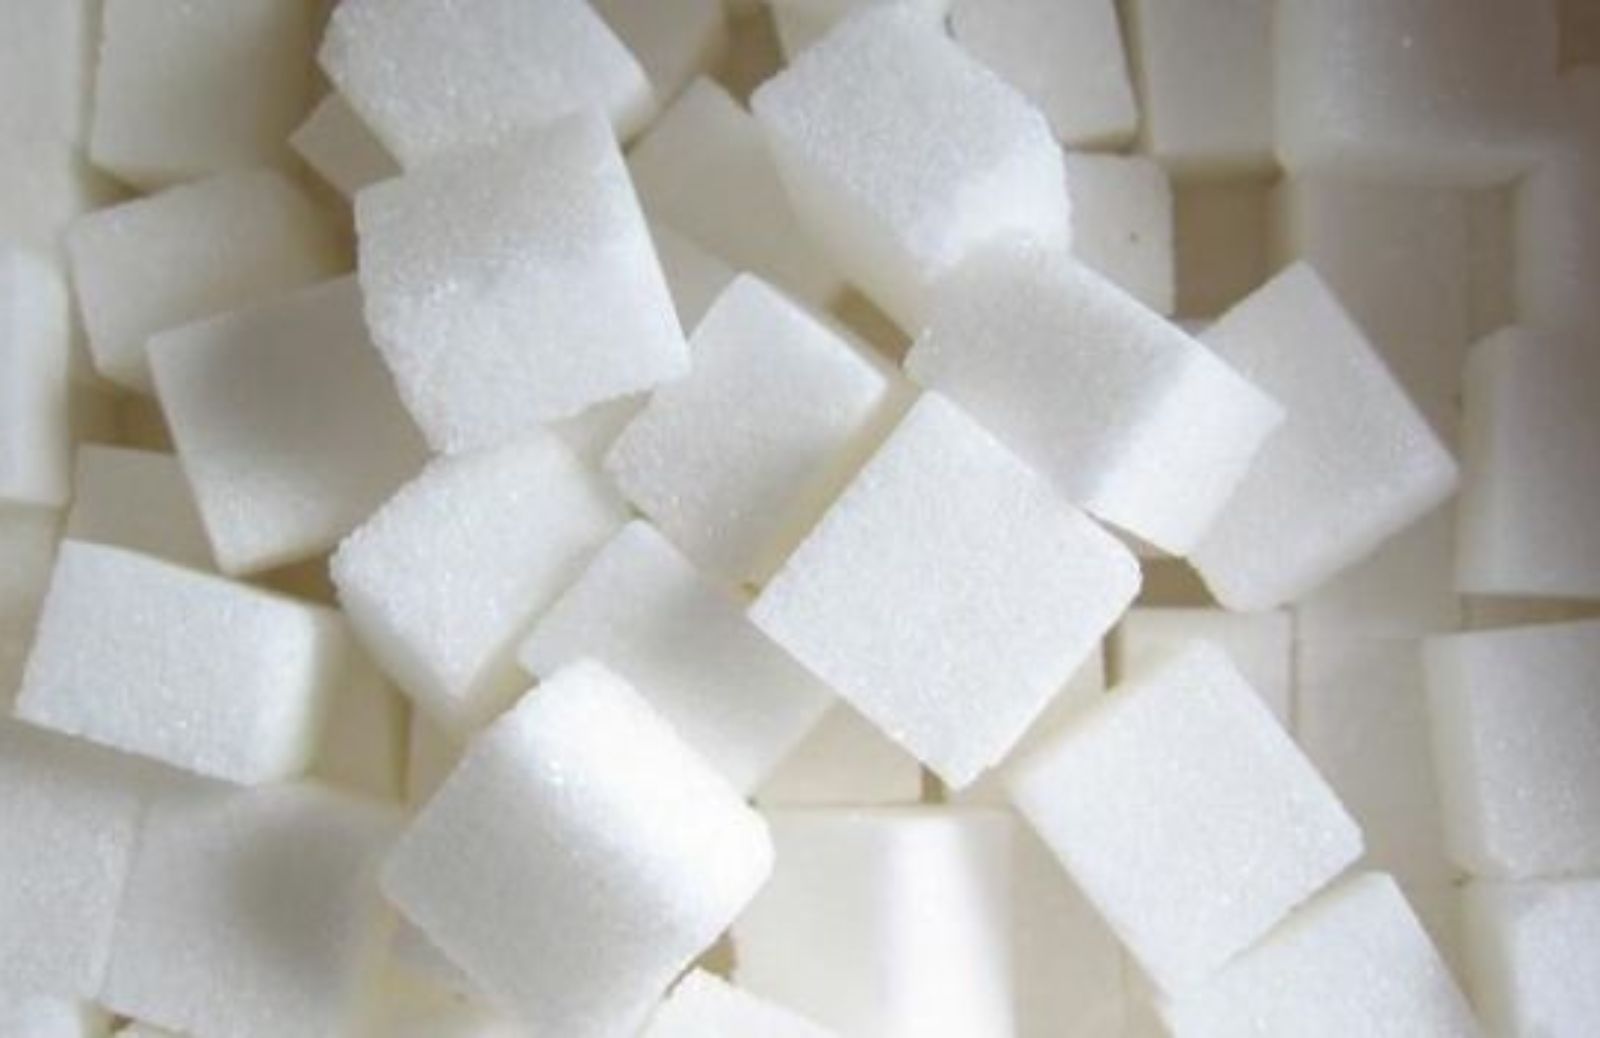 Come zuccherare senza zucchero